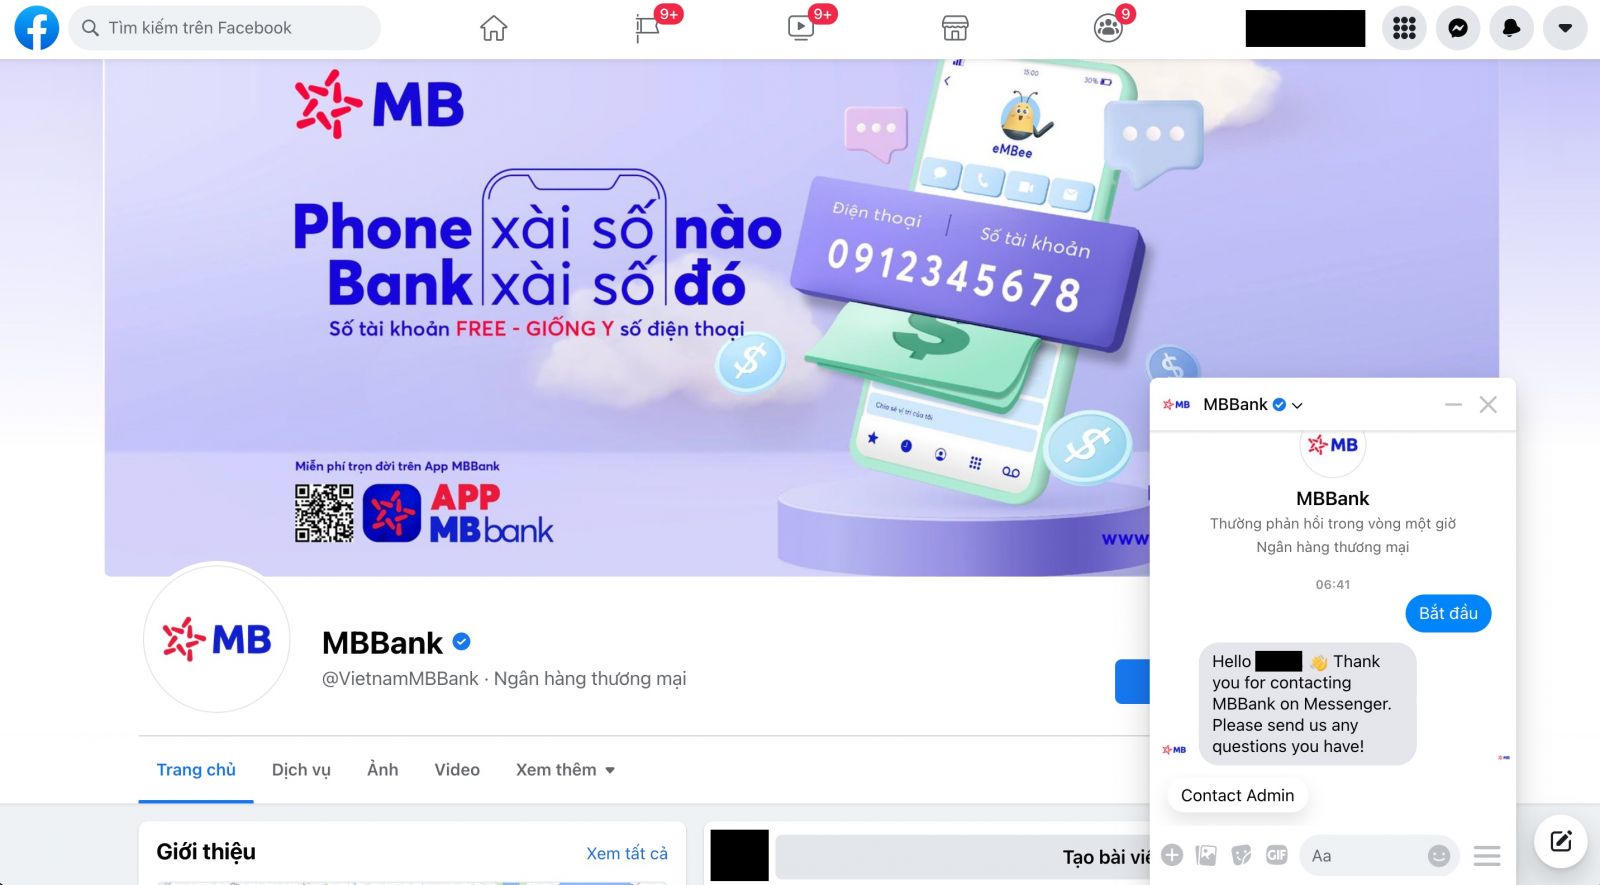 CSKH thông qua Facebook MB Bank